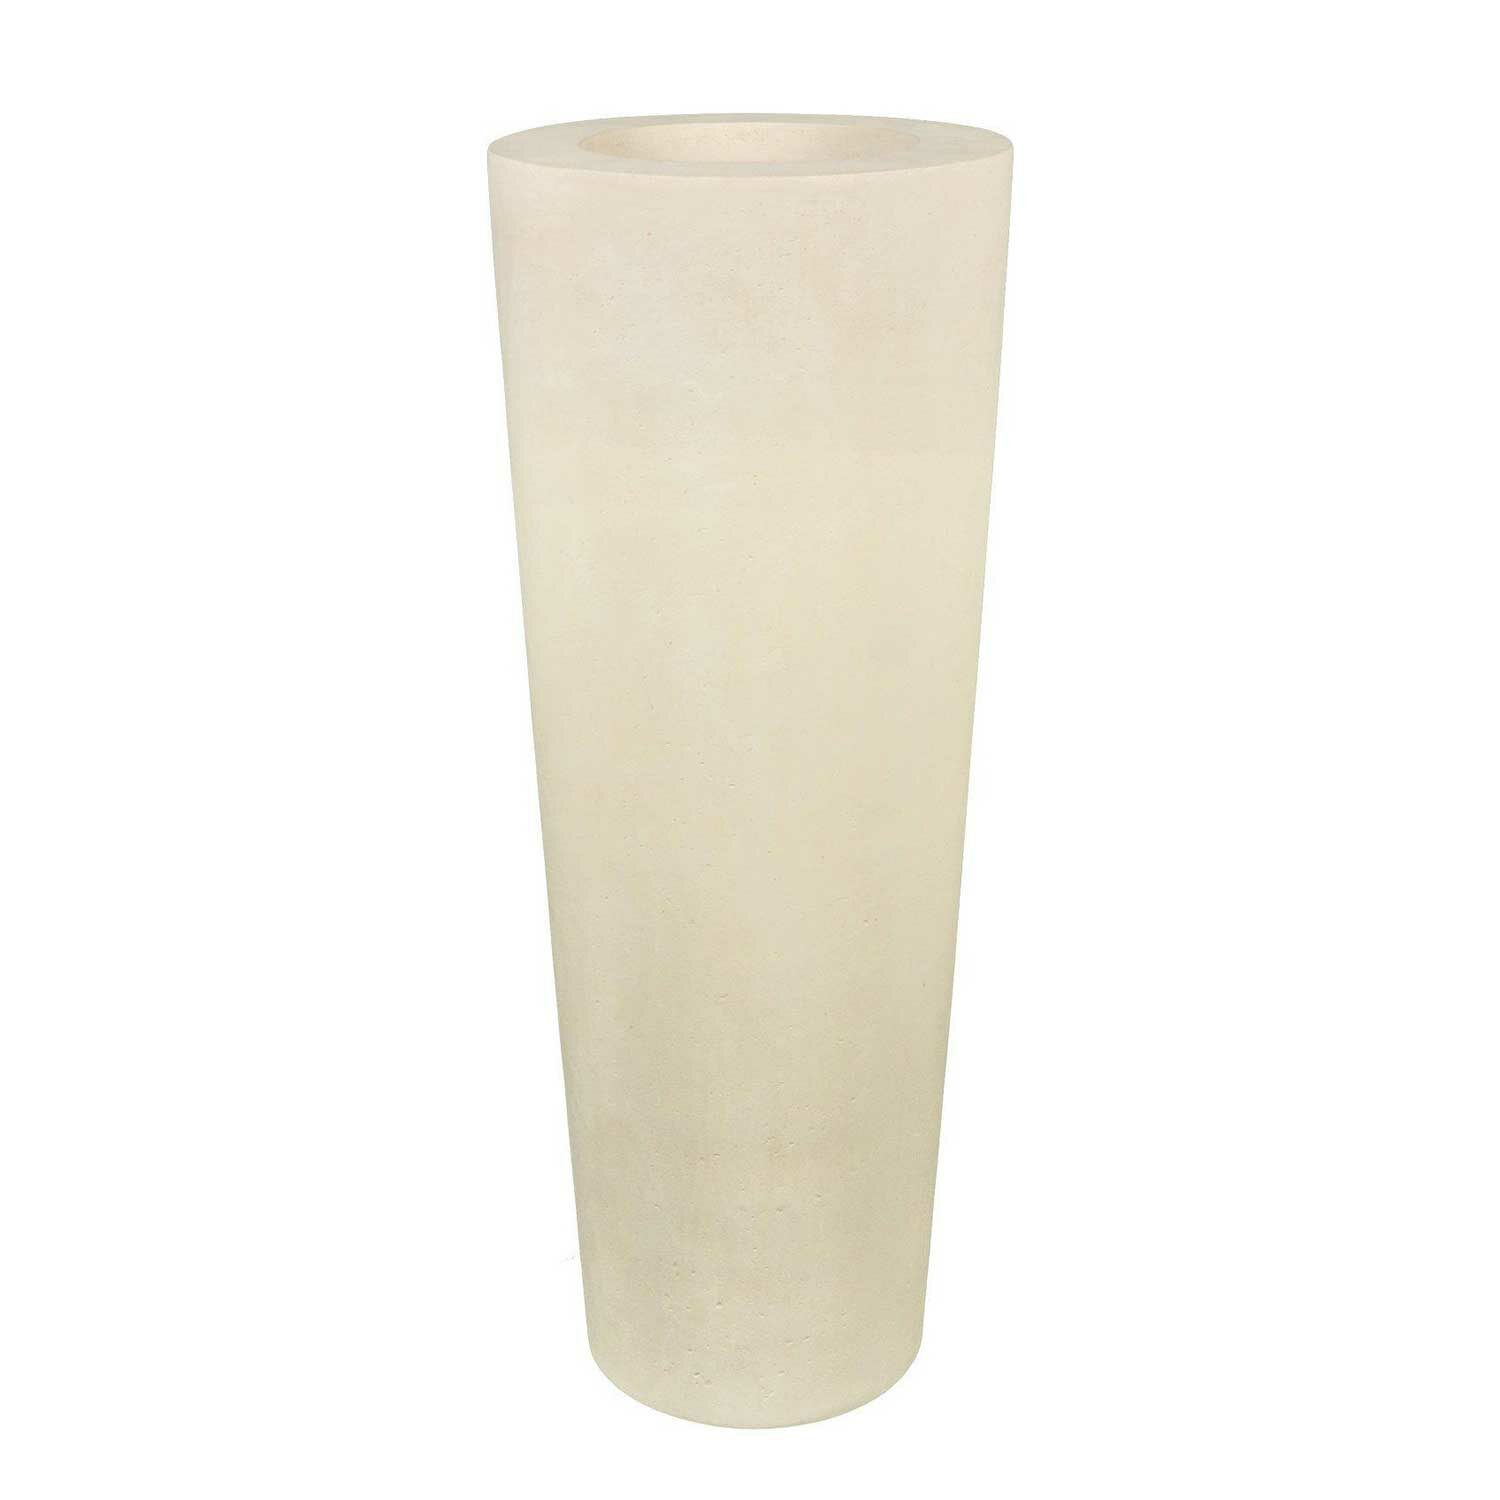 CLASSIC floor vase cream